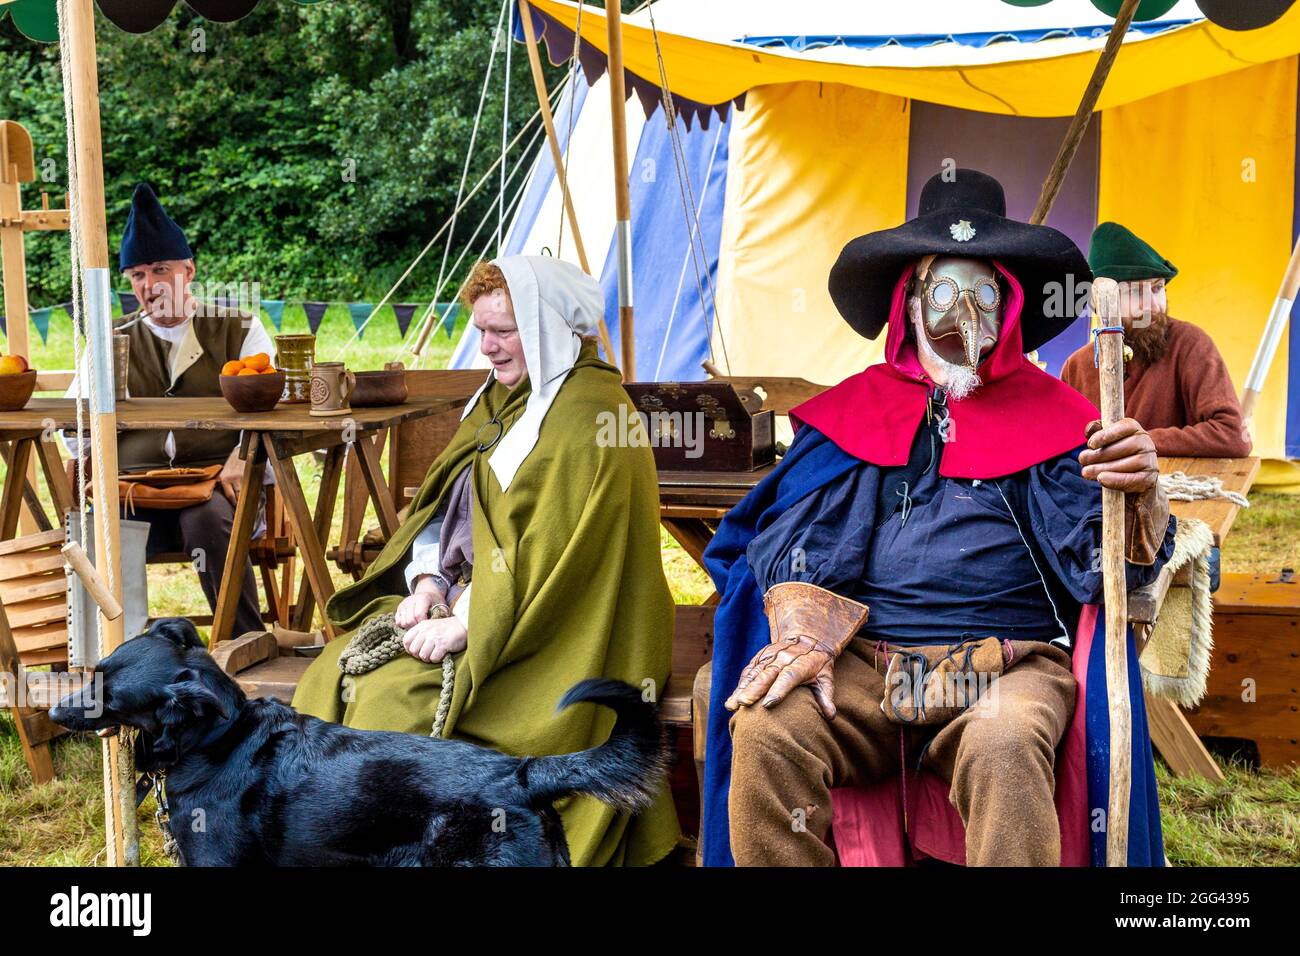 8. August 2021 - Mann, der als Pestarzt verkleidet ist, trägt Schnabelmaske beim Mediaval Festival Loxwood Joust, West Sussex, England, Großbritannien Stockfoto